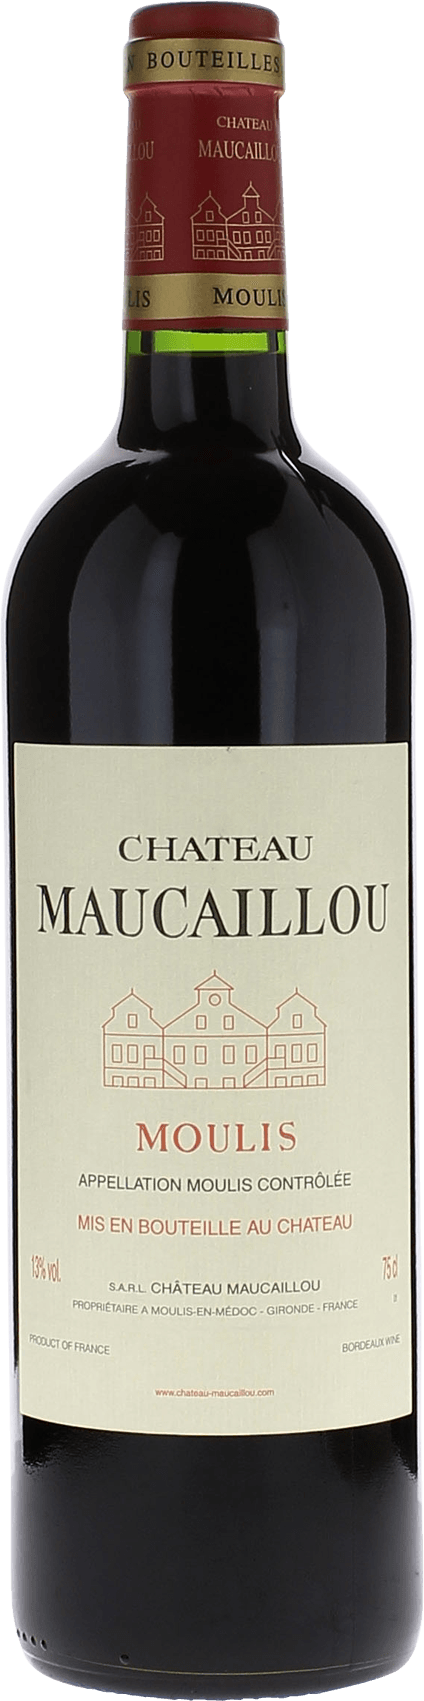 Maucaillou 1990 Cru Bourgeois Suprieur Moulis, Bordeaux rouge